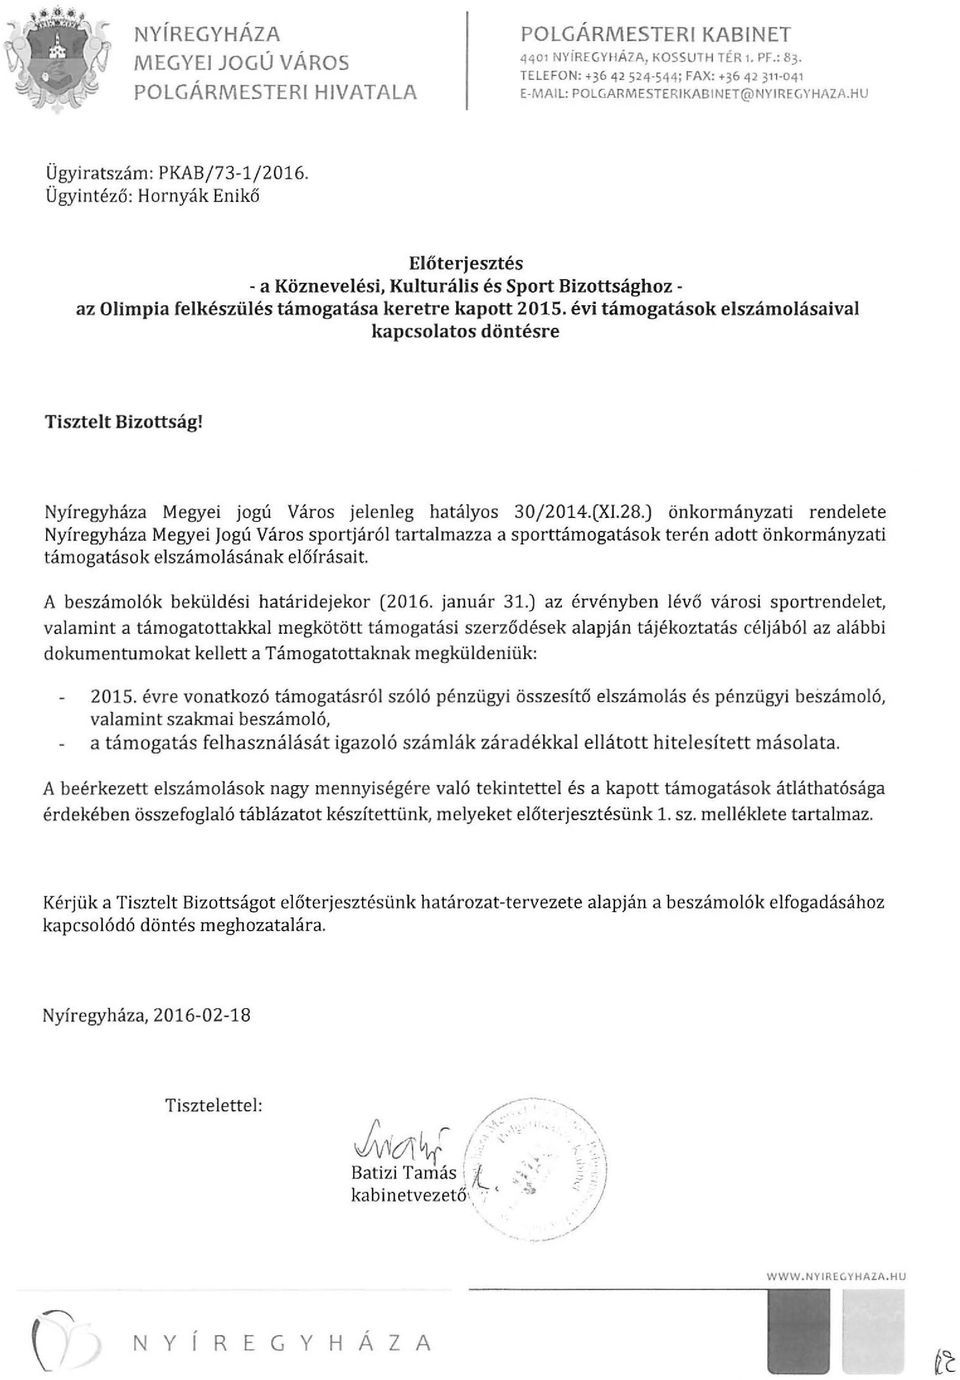 Ügyintéző : Hornyák Enikő Előterjesztés - a Köznevelési, Kulturális és Sport Bizottsághoz - az Olimpia felkészülés támogatása keretre kapott 2015.